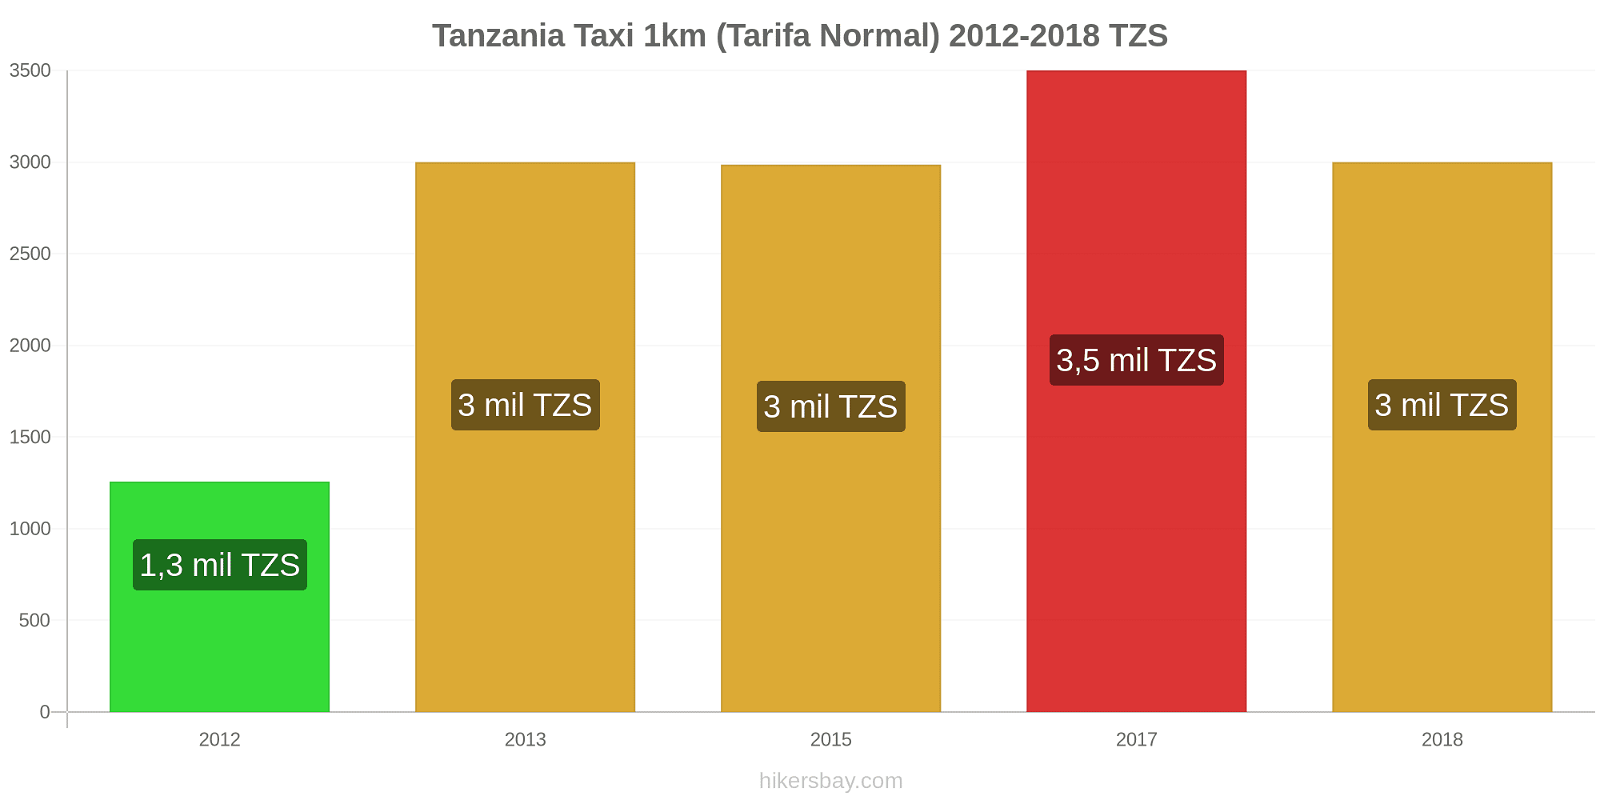 Tanzania cambios de precios Taxi 1km (tarifa normal) hikersbay.com